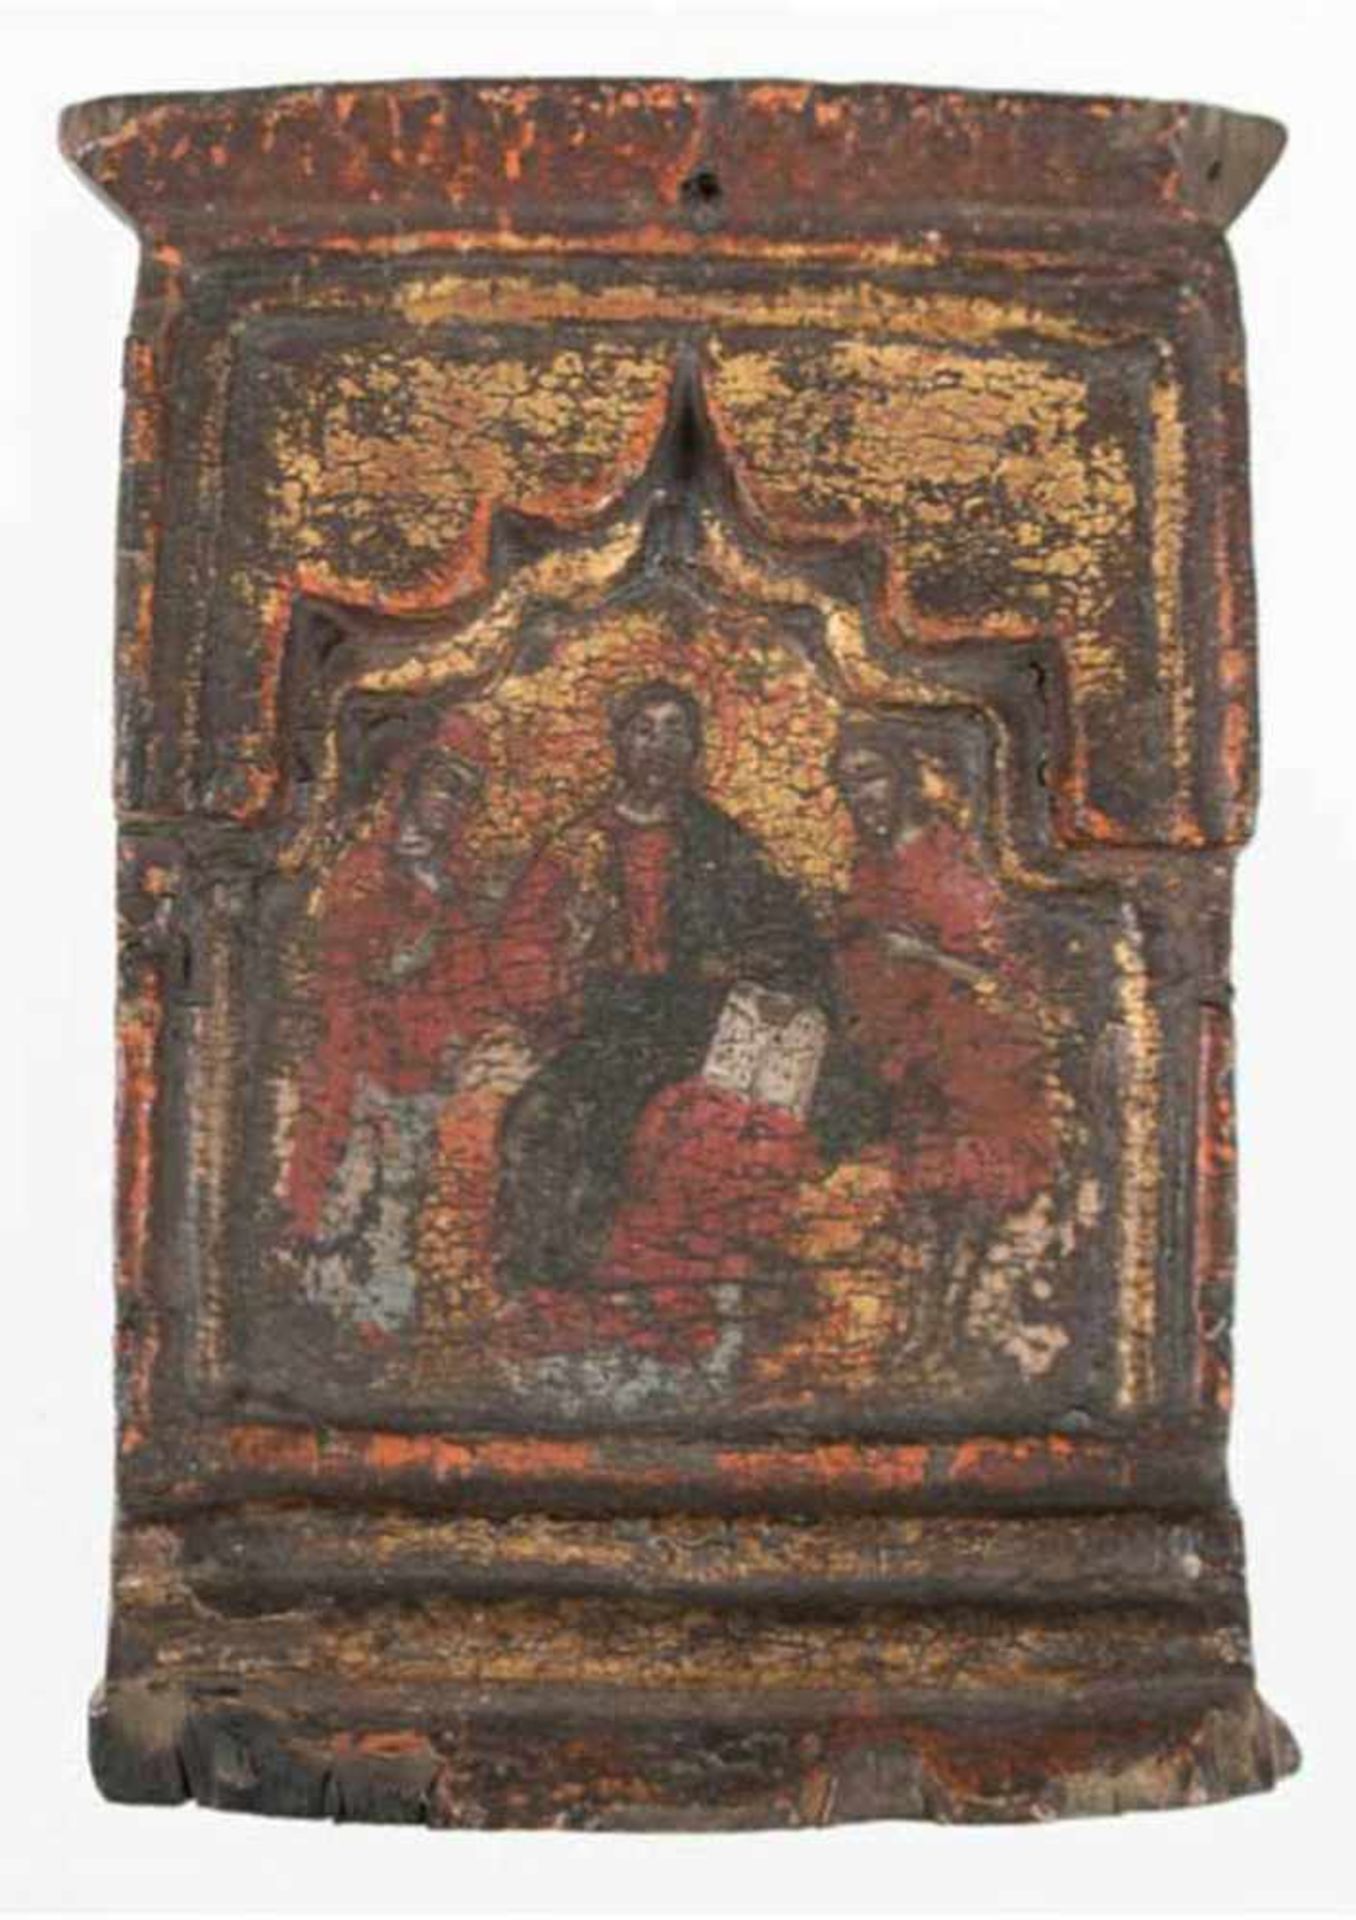 Ikone, Griechenland 17. Jh., Mitteltafel eines Triptychons, Deesis-Gruppe, Ei/Tempera,16,5x12 cm